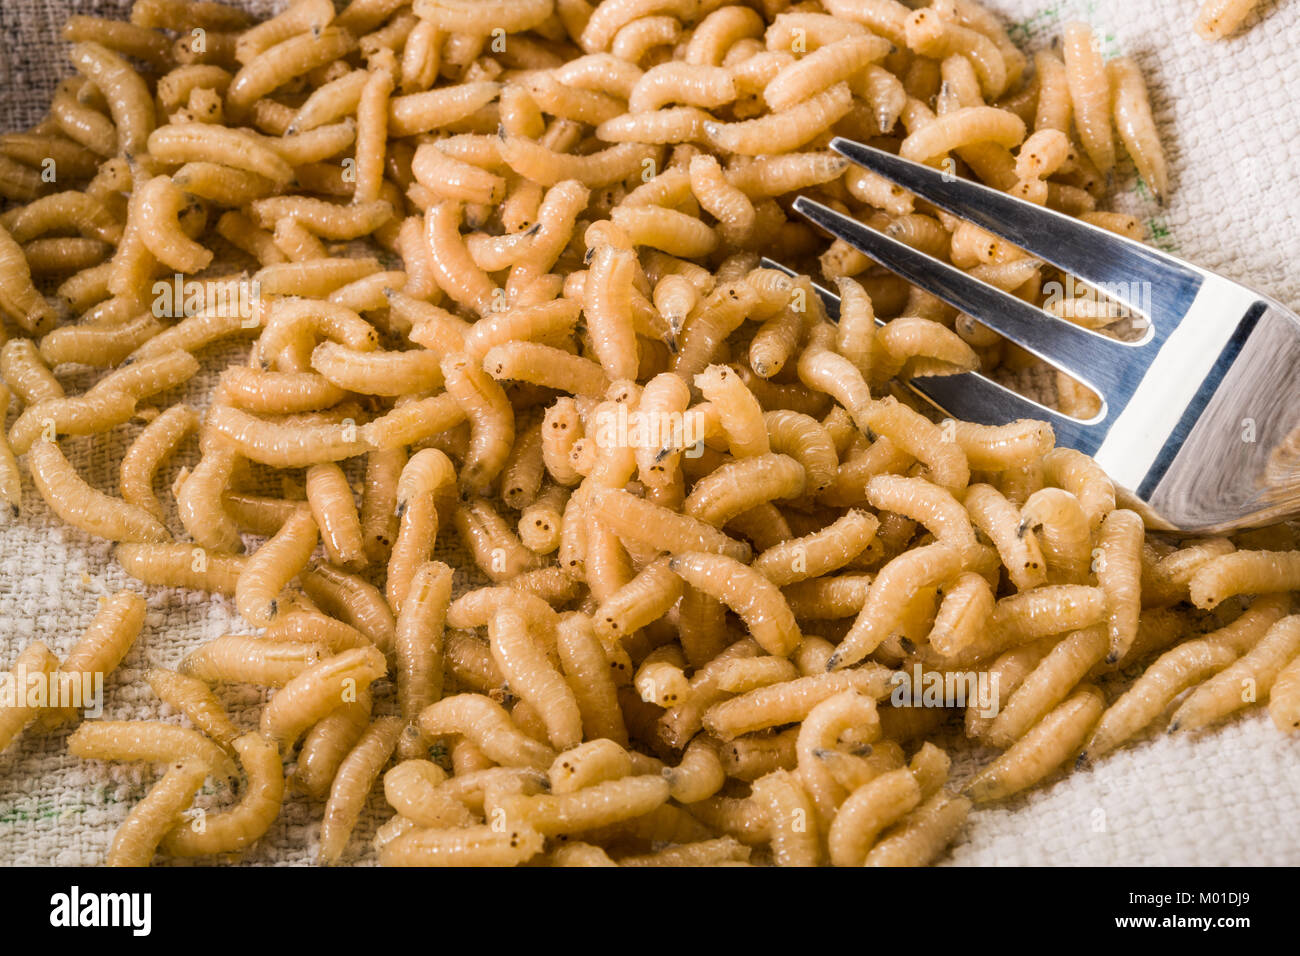 Nuovo cibo: mangiare vermi larve di insetto Foto Stock